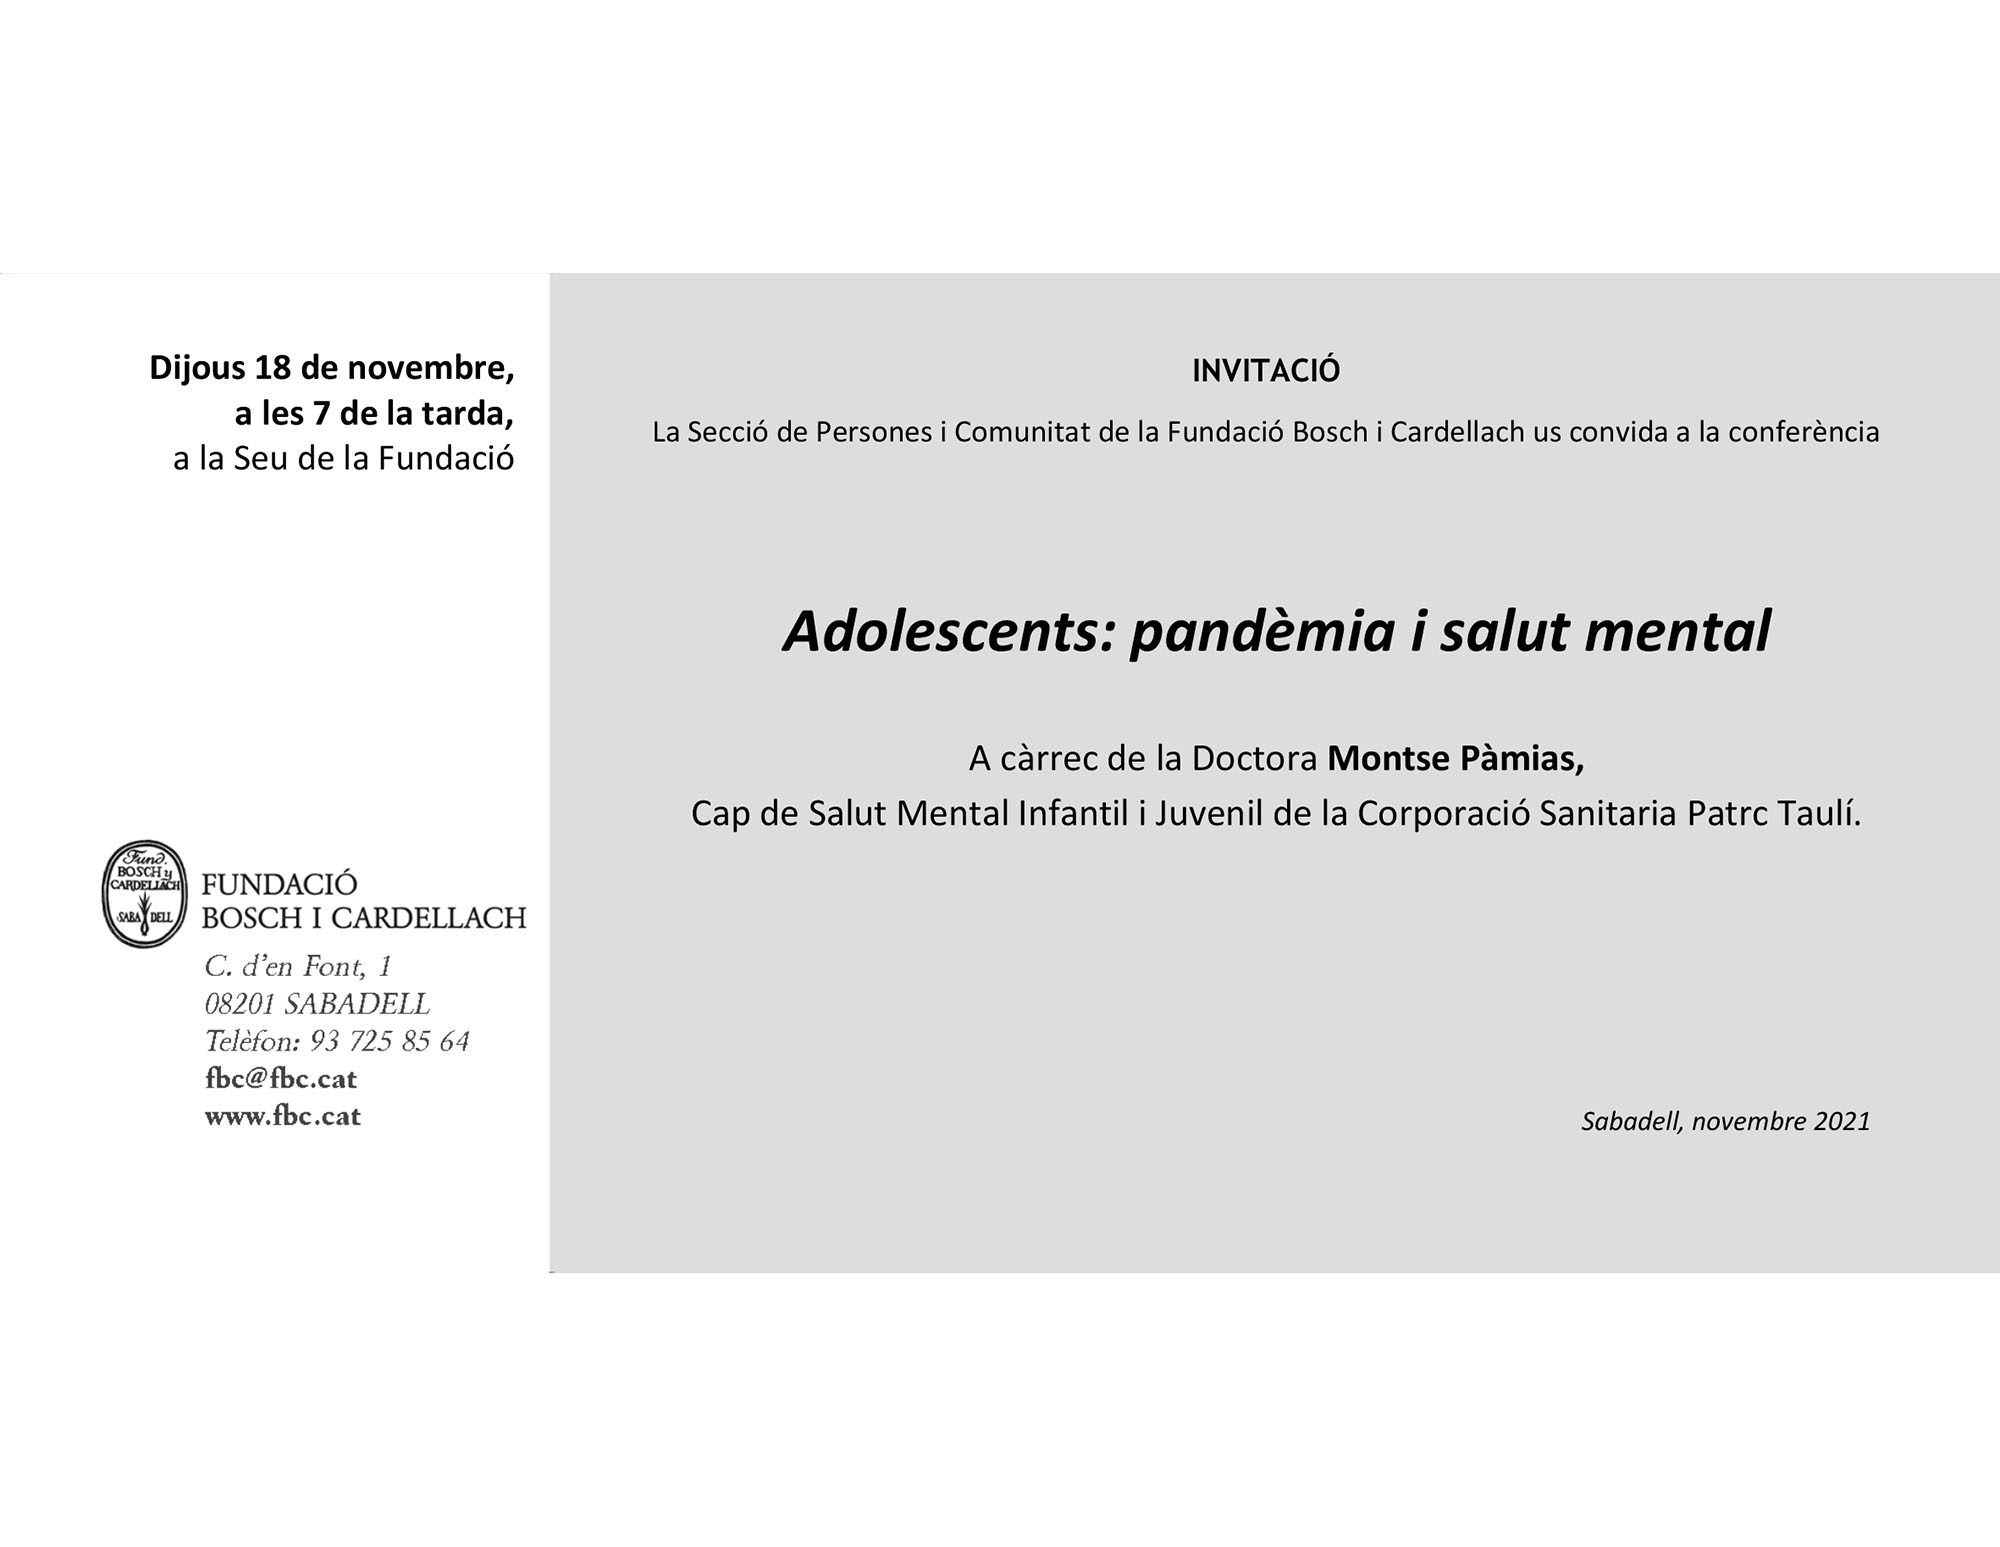 La Fundació Bosch i Cardellach us convida la conferència "Adolescents: pandèmia i salut mental"